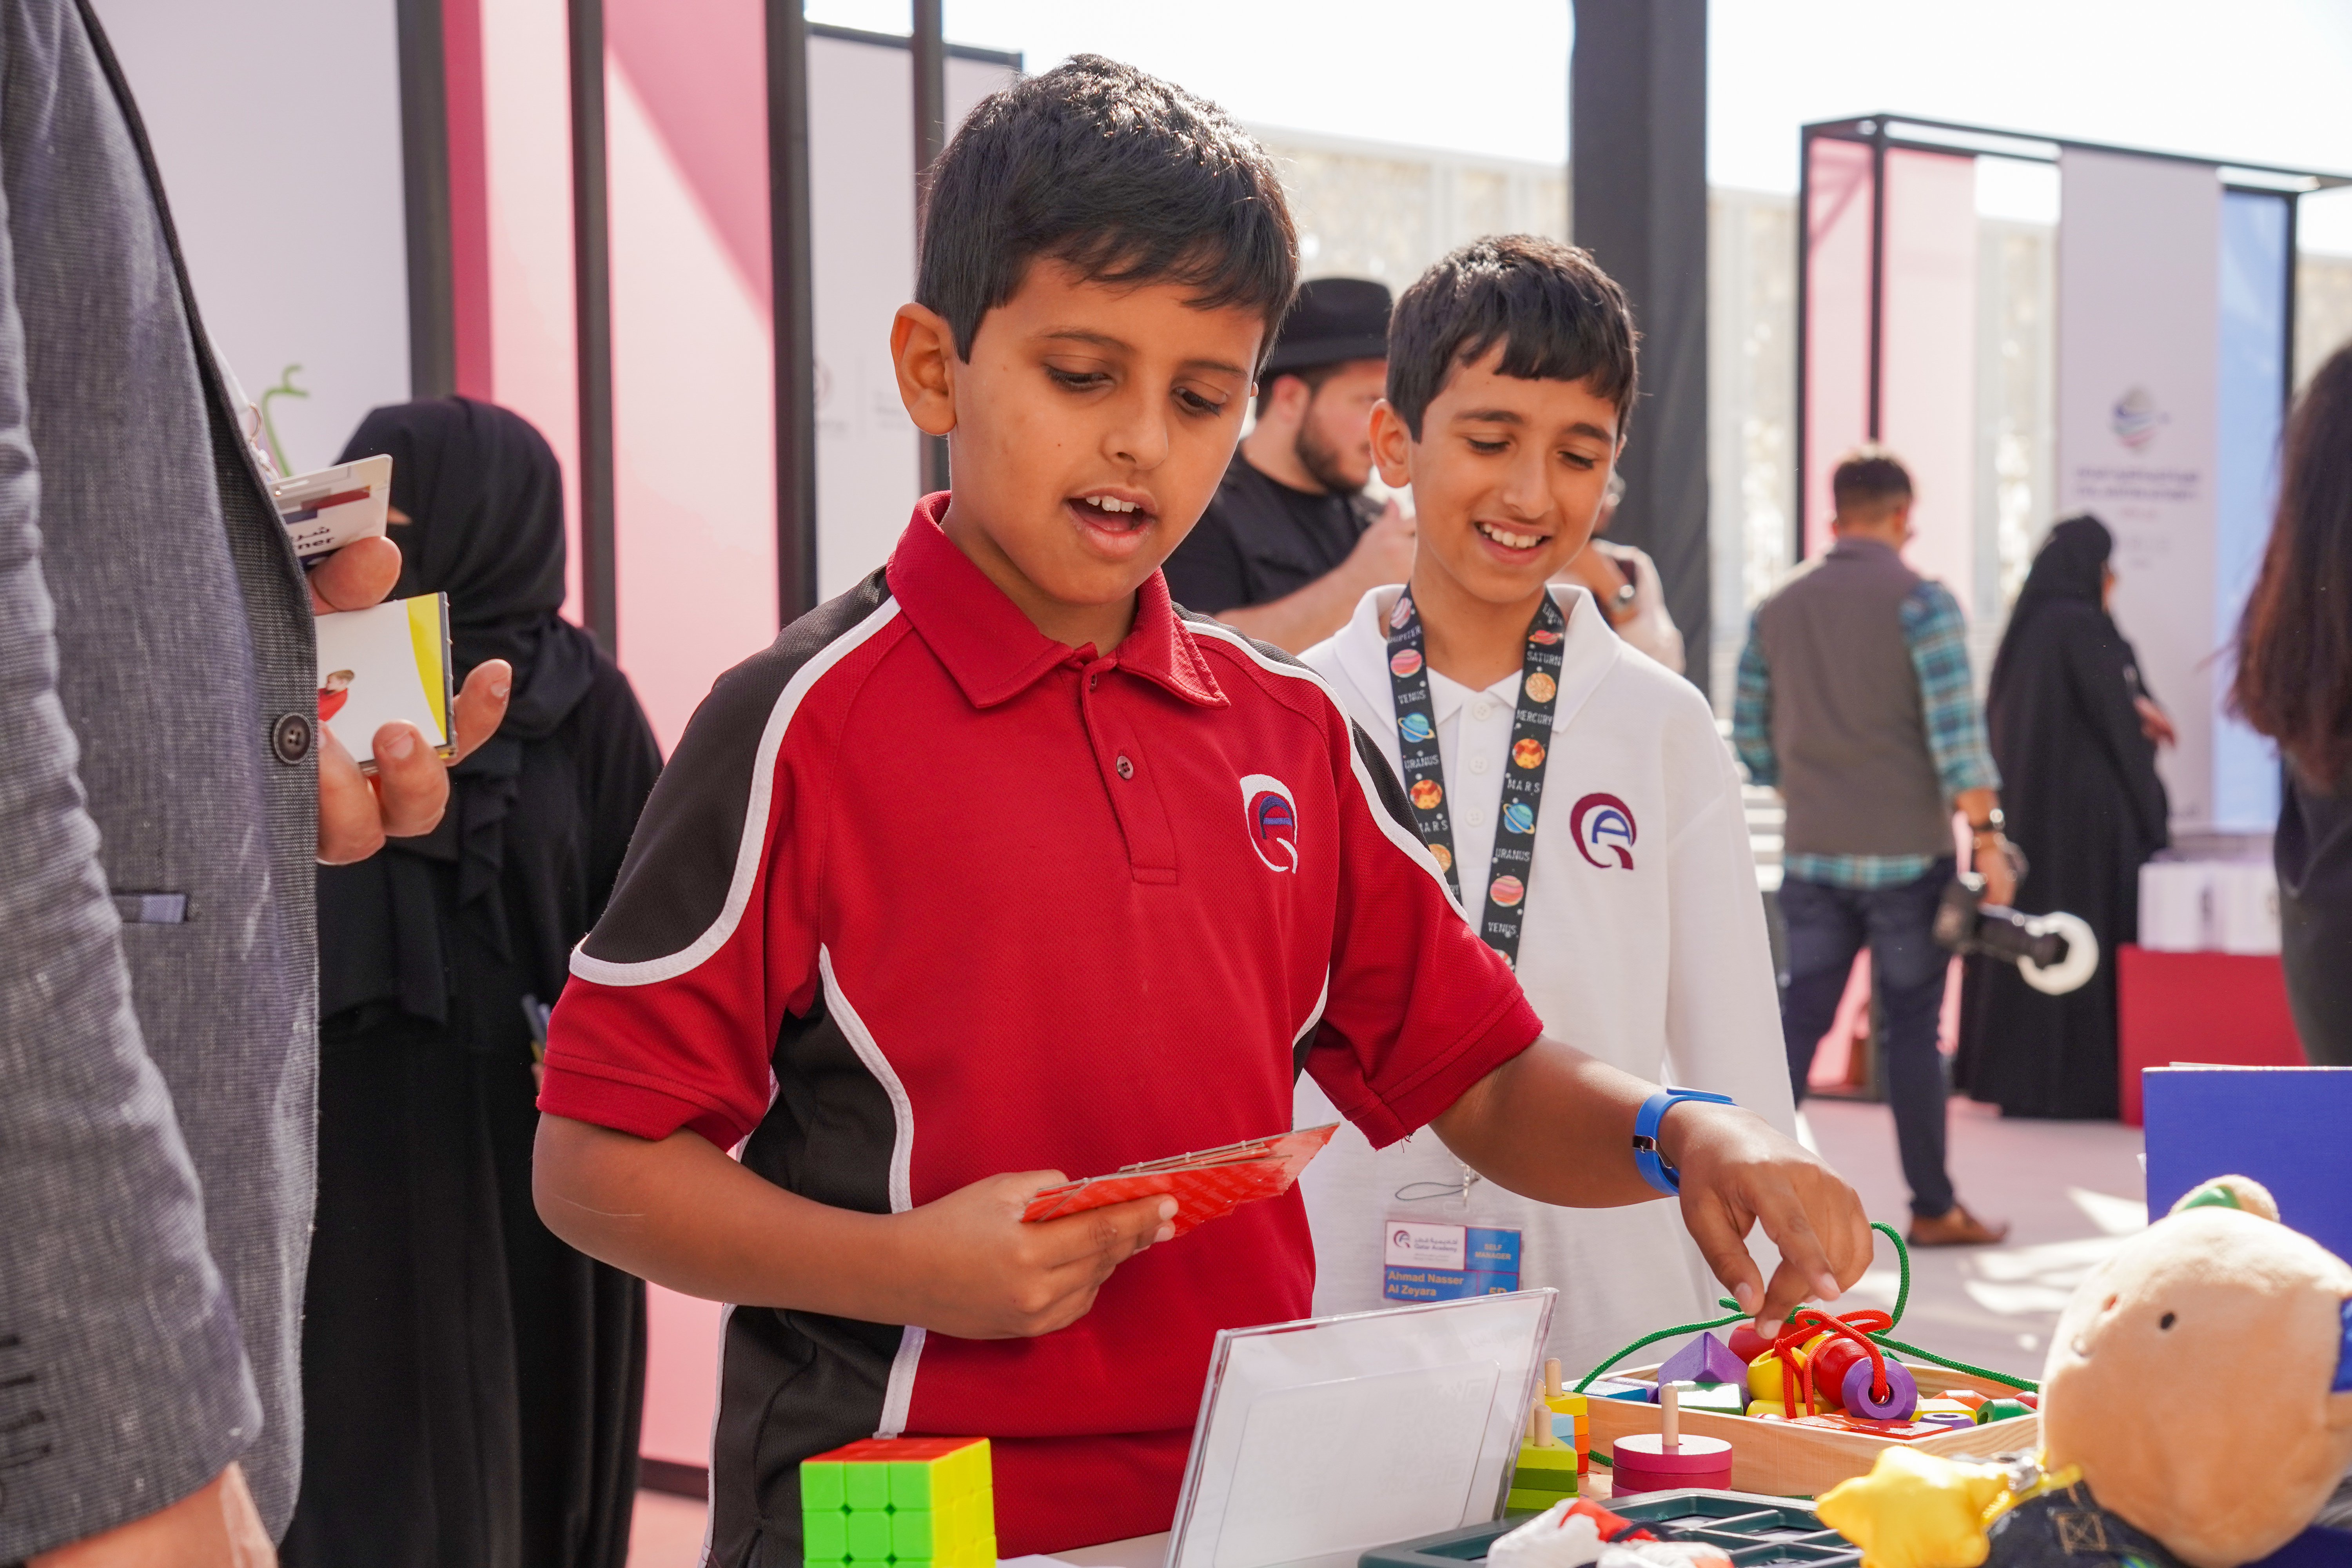 مشاركة مركز الشفلح للأشخاص ذوي الإعاقة في فعاليات اليوم الدولي للتعليم بدعوة من مؤسسة قطر